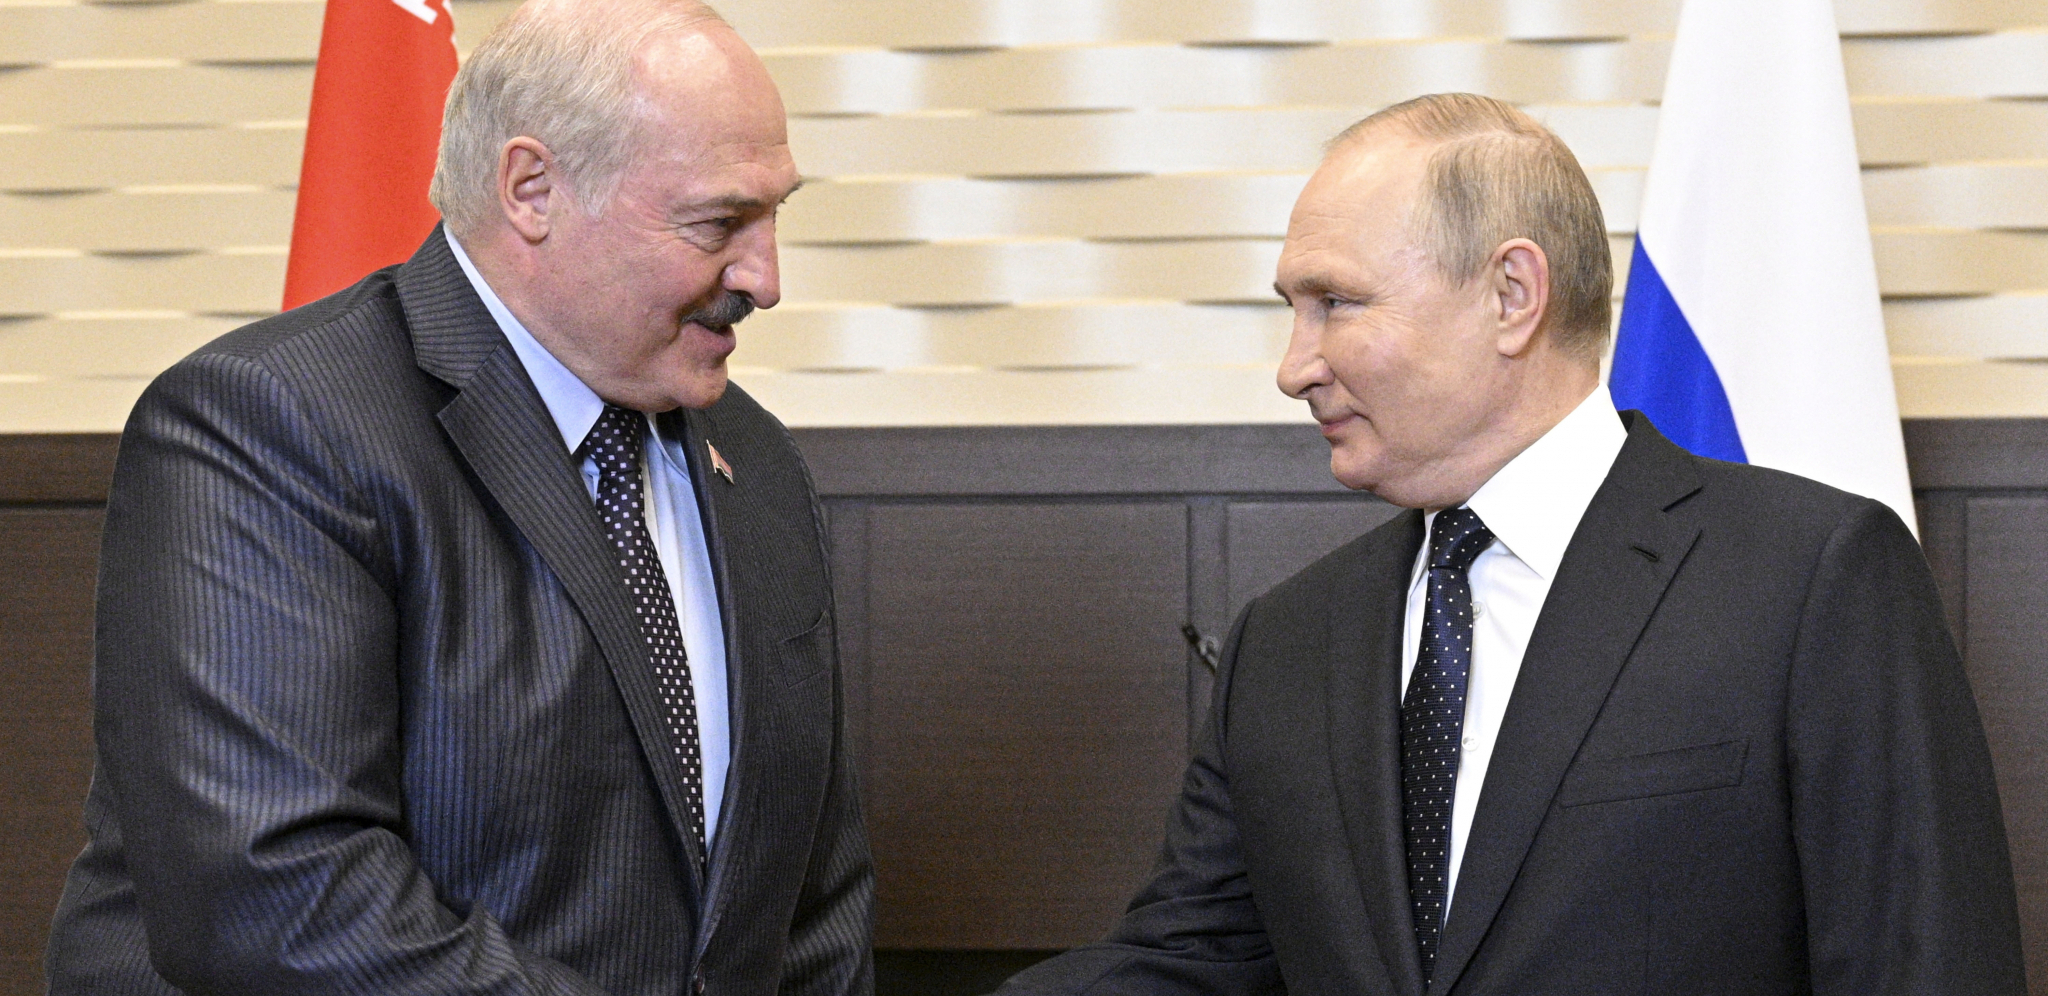 SLEDI SASTANAK SA PUTINOM Lukašenko stigao u Rusiju